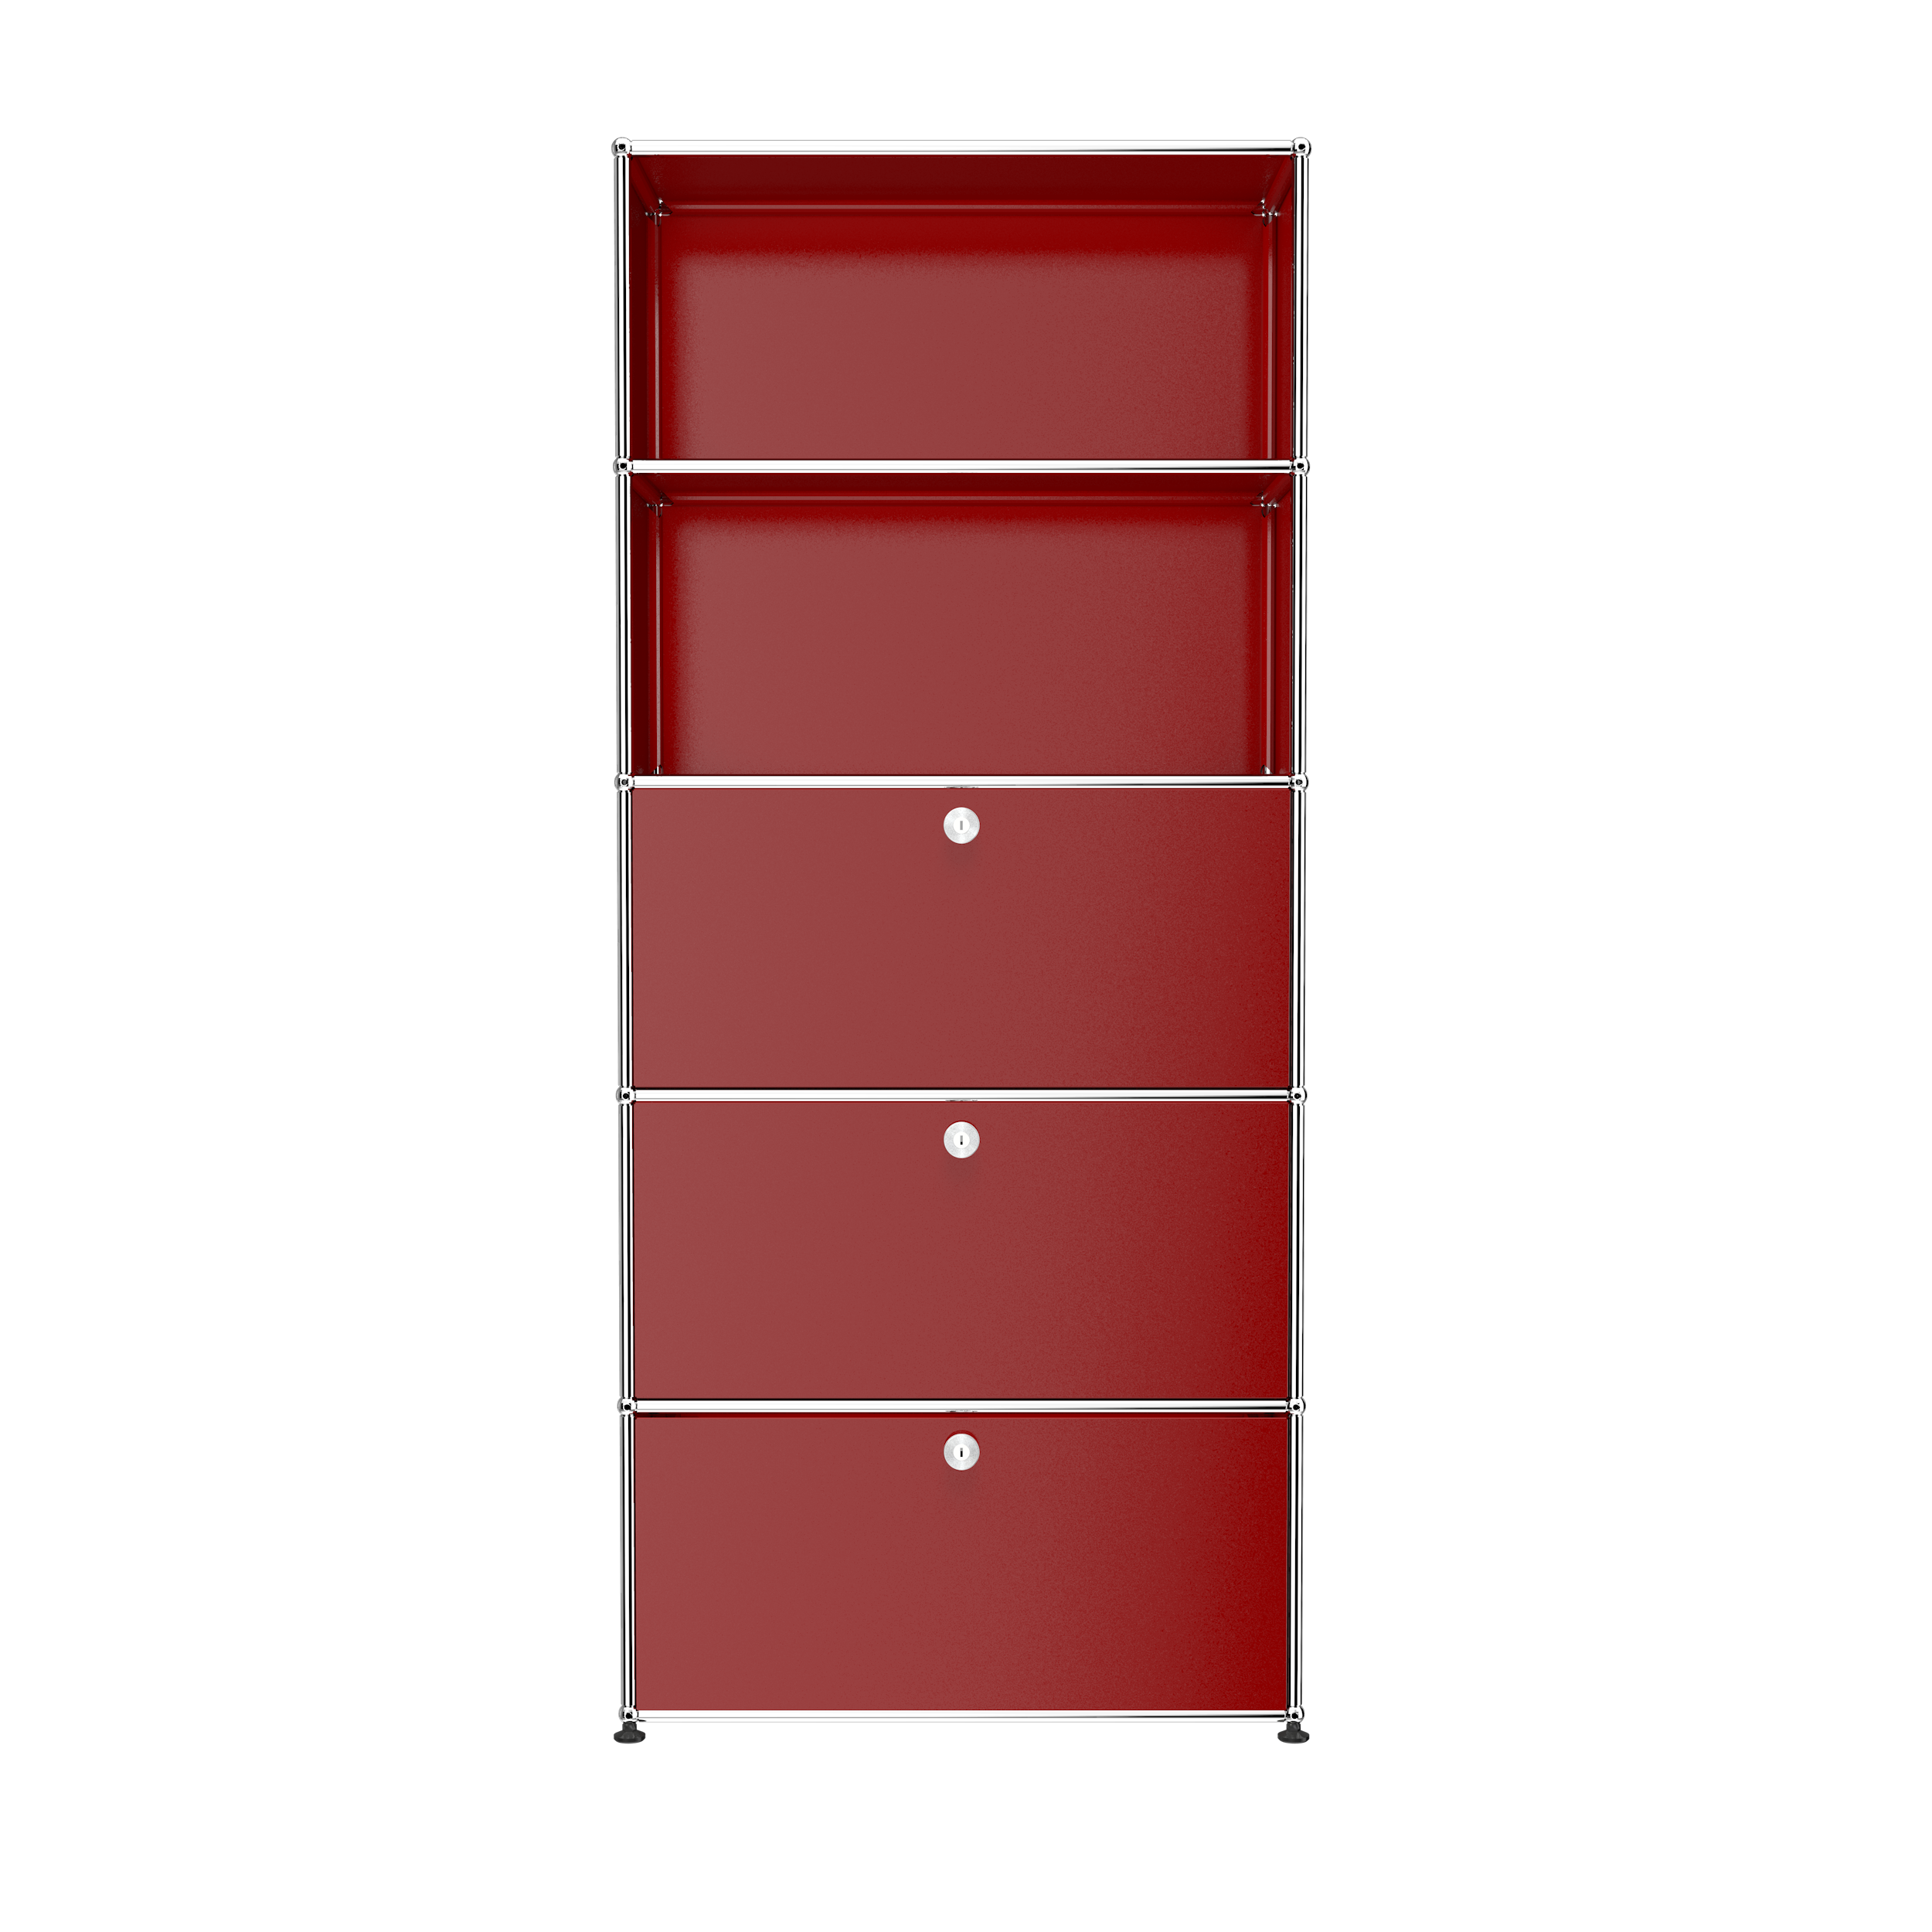 USM Ruby Red USM Haller shelving (Q118)|Buffets & Sideboards